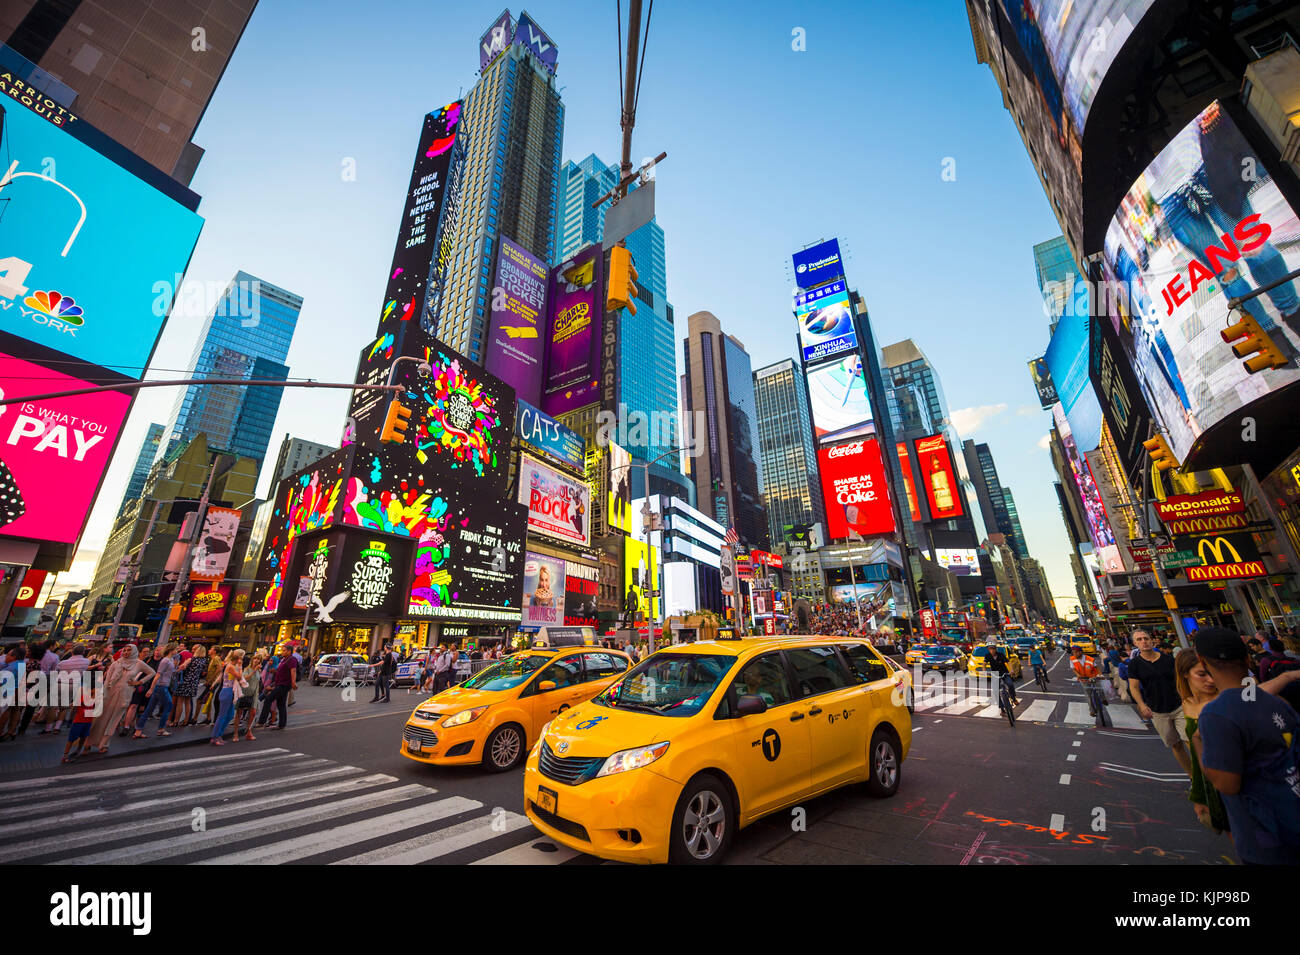 NEW YORK - 23 août 2017 : néon lumineux clignote sur l'affichage des foules et de la circulation par le biais de zoom taxi Times Square. Banque D'Images